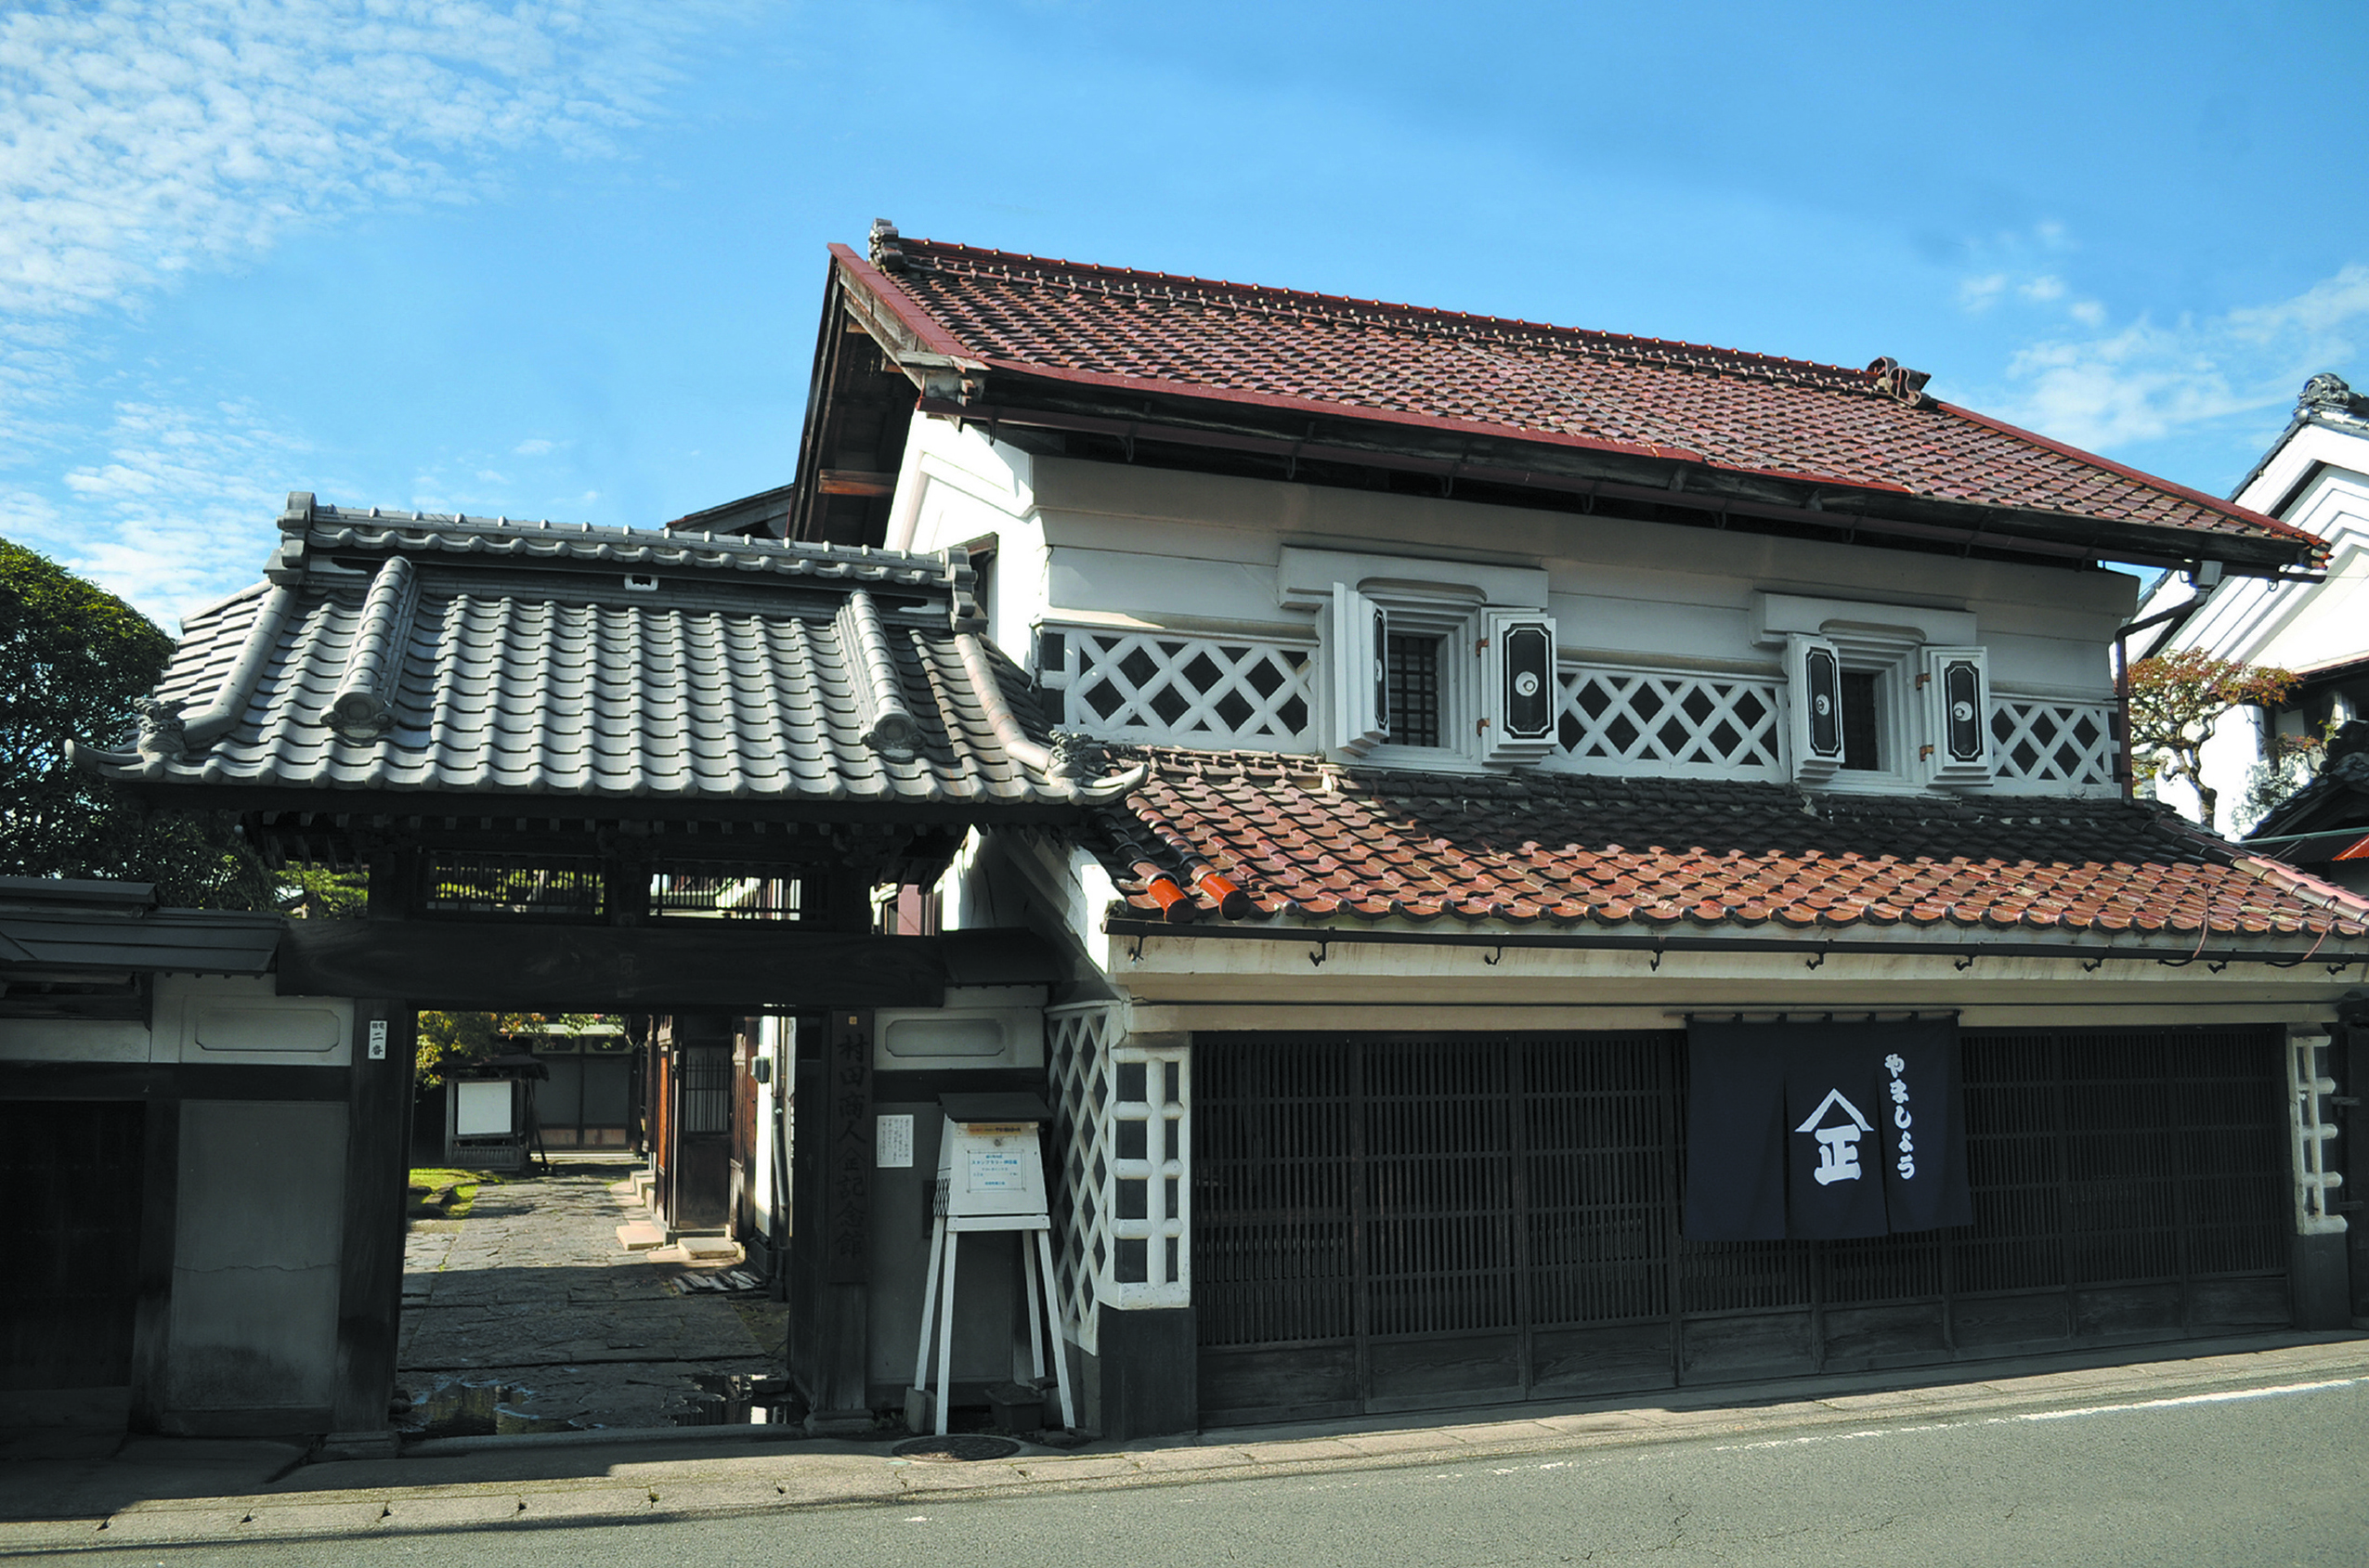 「やましょう」記念館 - 村田町の観光案内サイト MURATABI